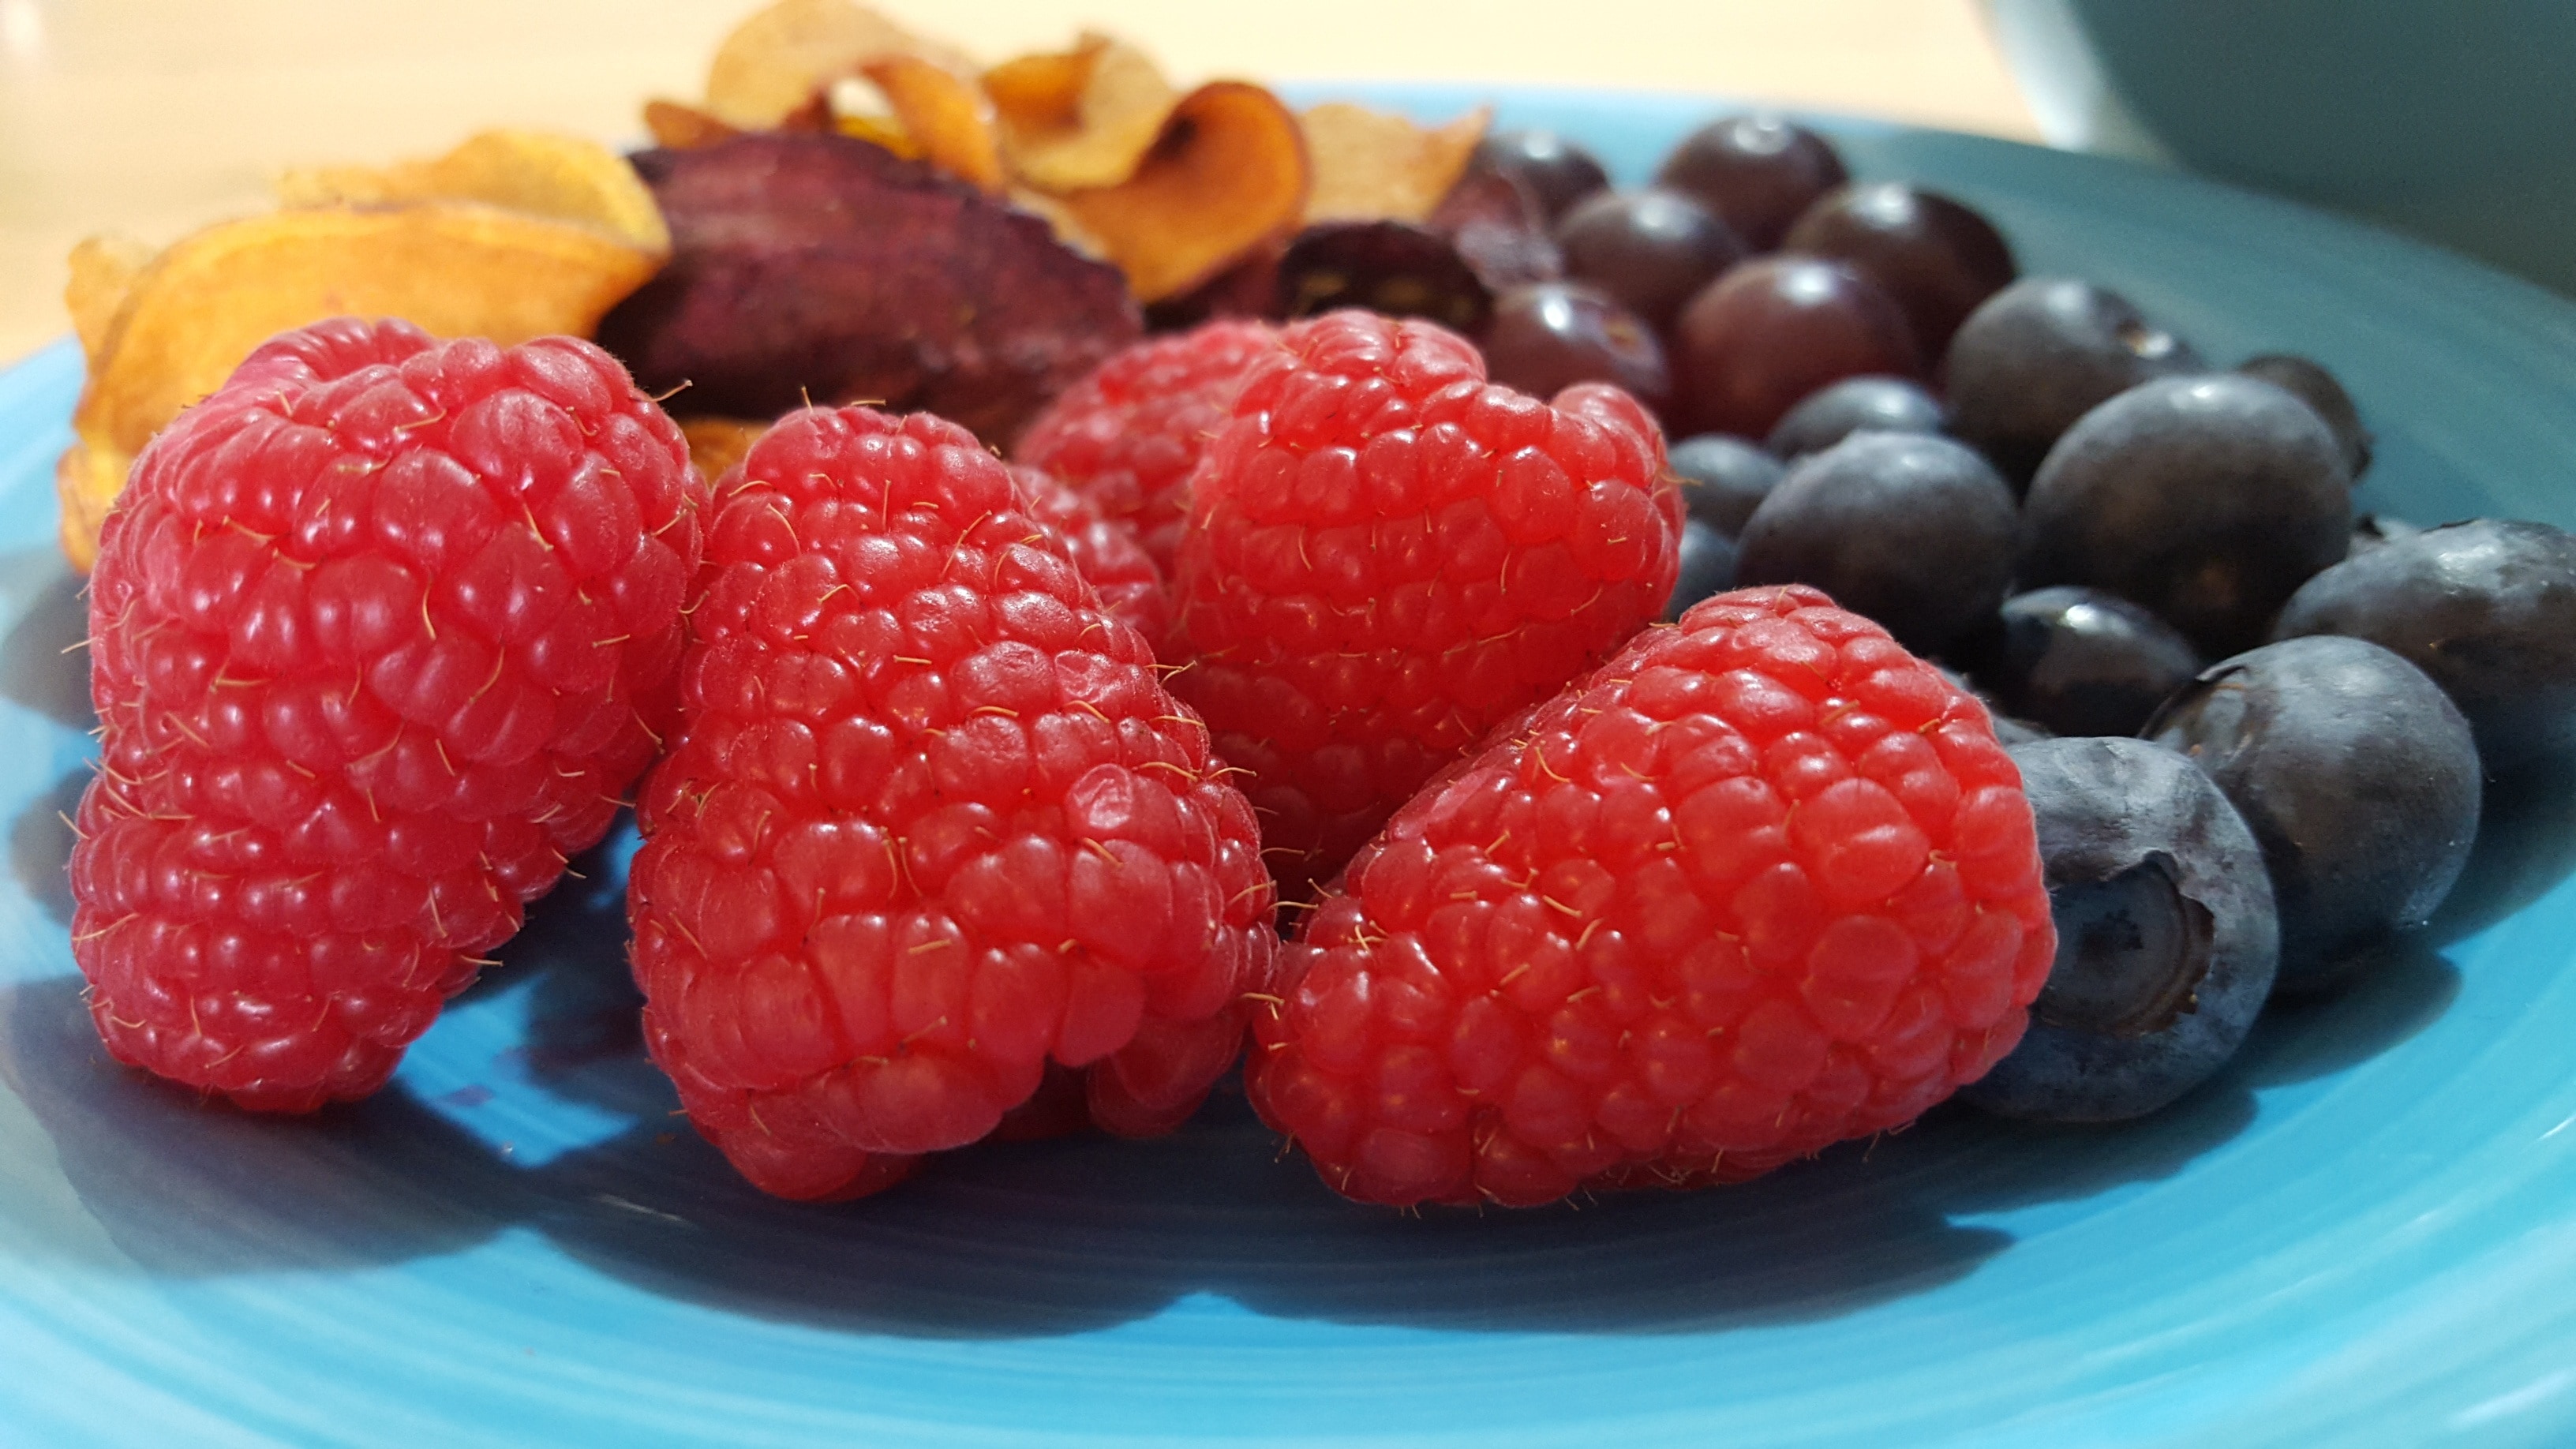 raspberries and blue berries